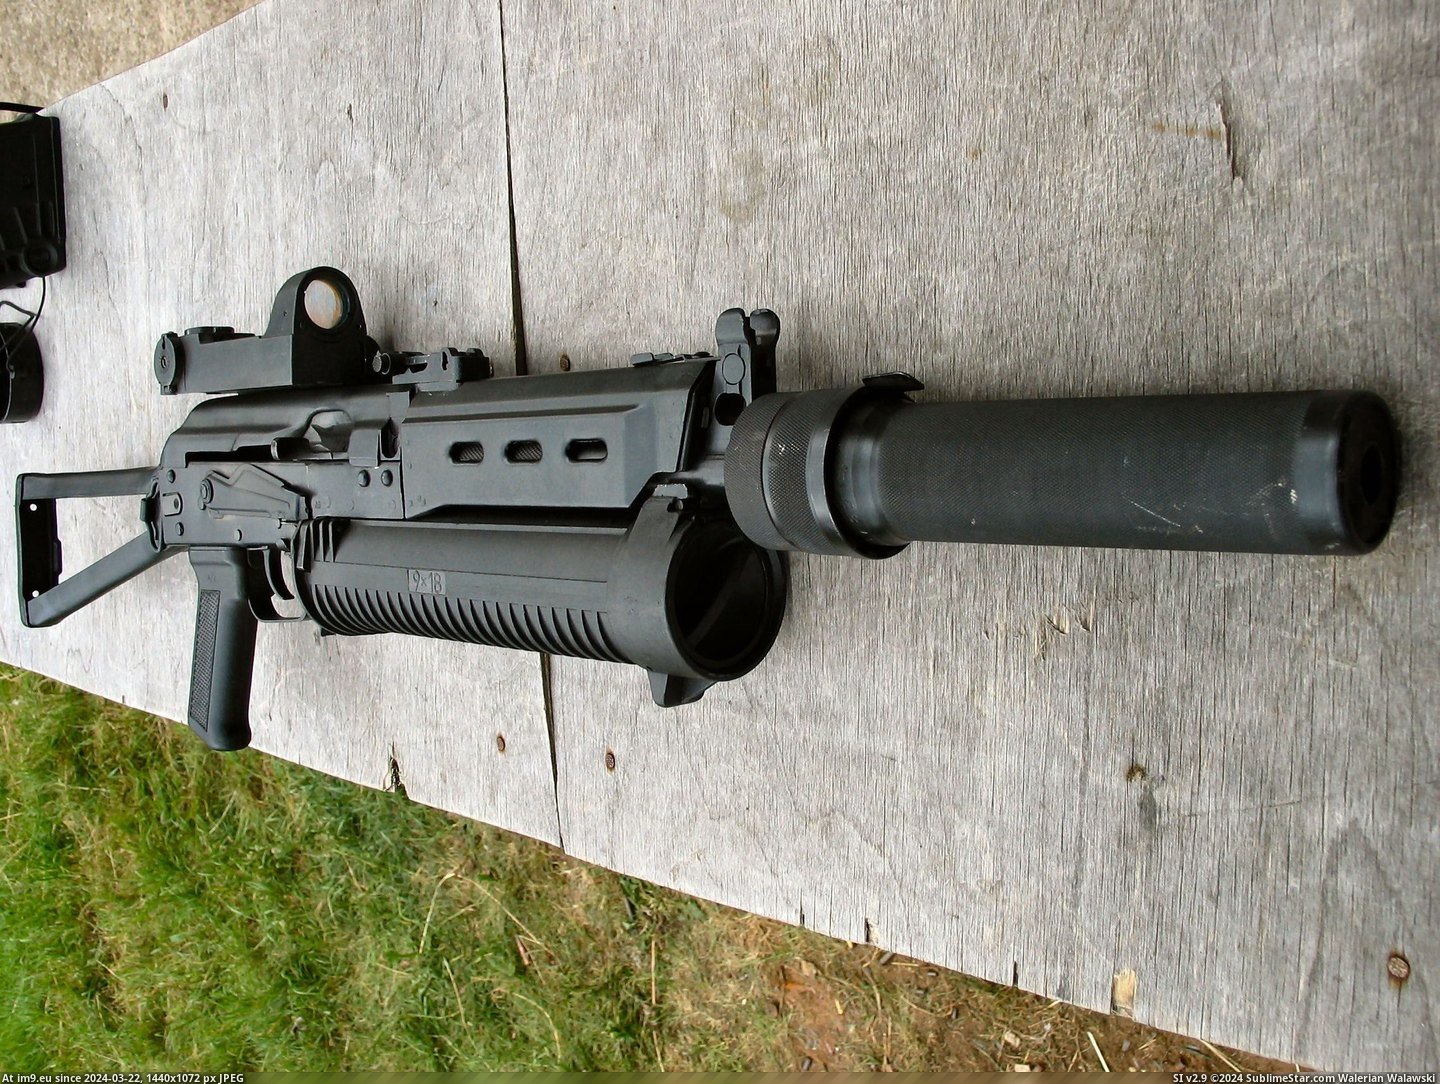 #Gun #Submachine #Bizon PP-19 Bizon Submachine Gun Pic. (Изображение из альбом Rehost))